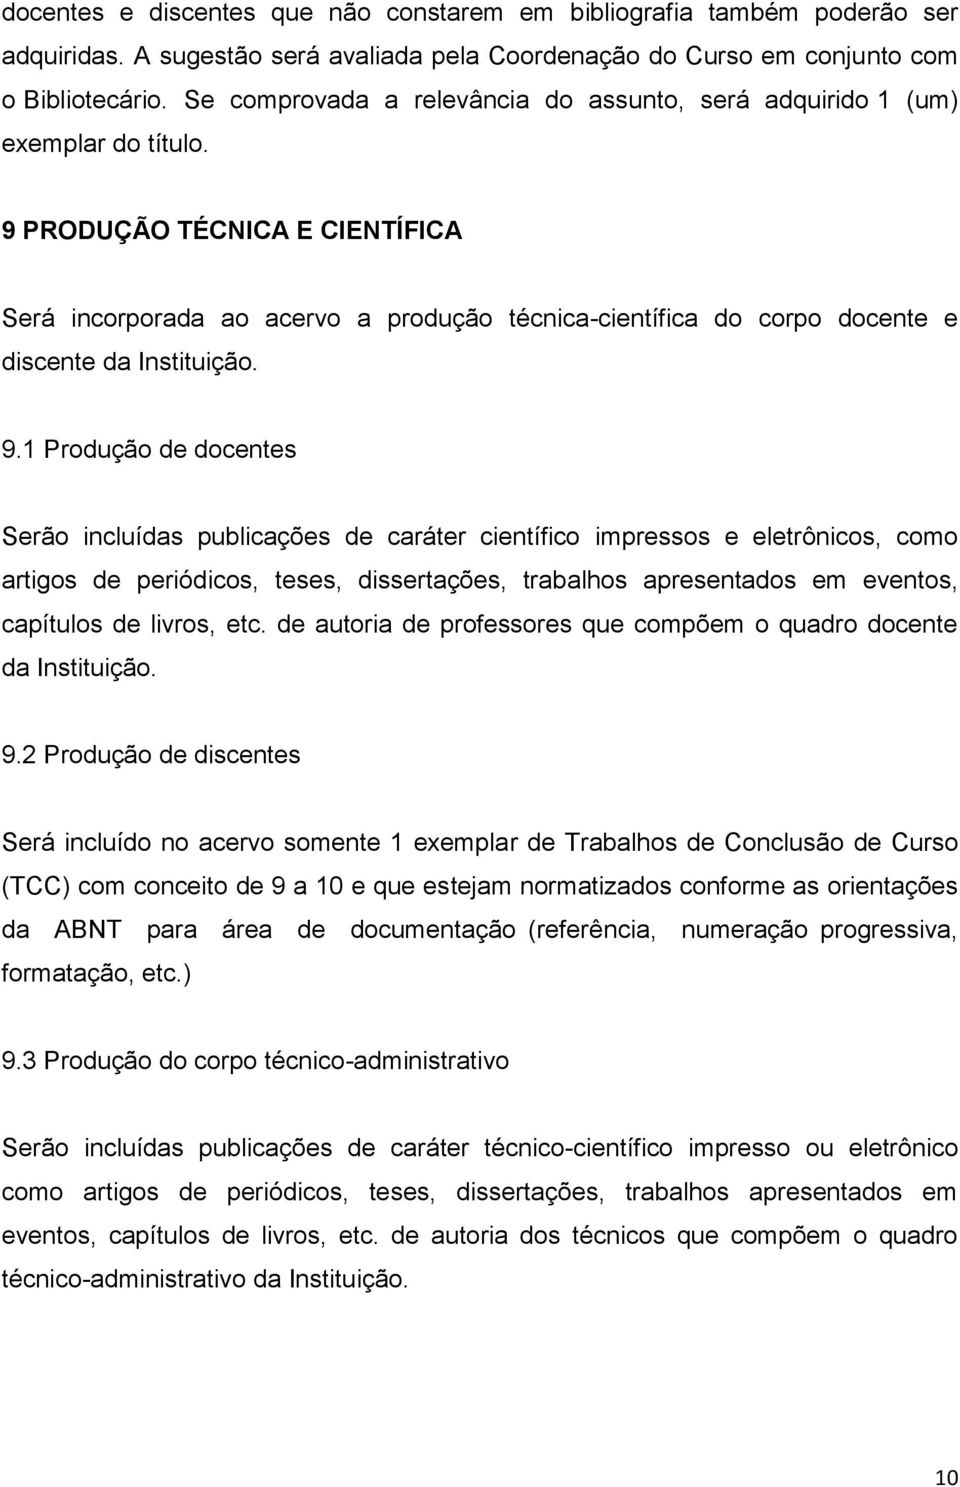 9 PRODUÇÃO TÉCNICA E CIENTÍFICA Será incorporada ao acervo a produção técnica-científica do corpo docente e discente da Instituição. 9.